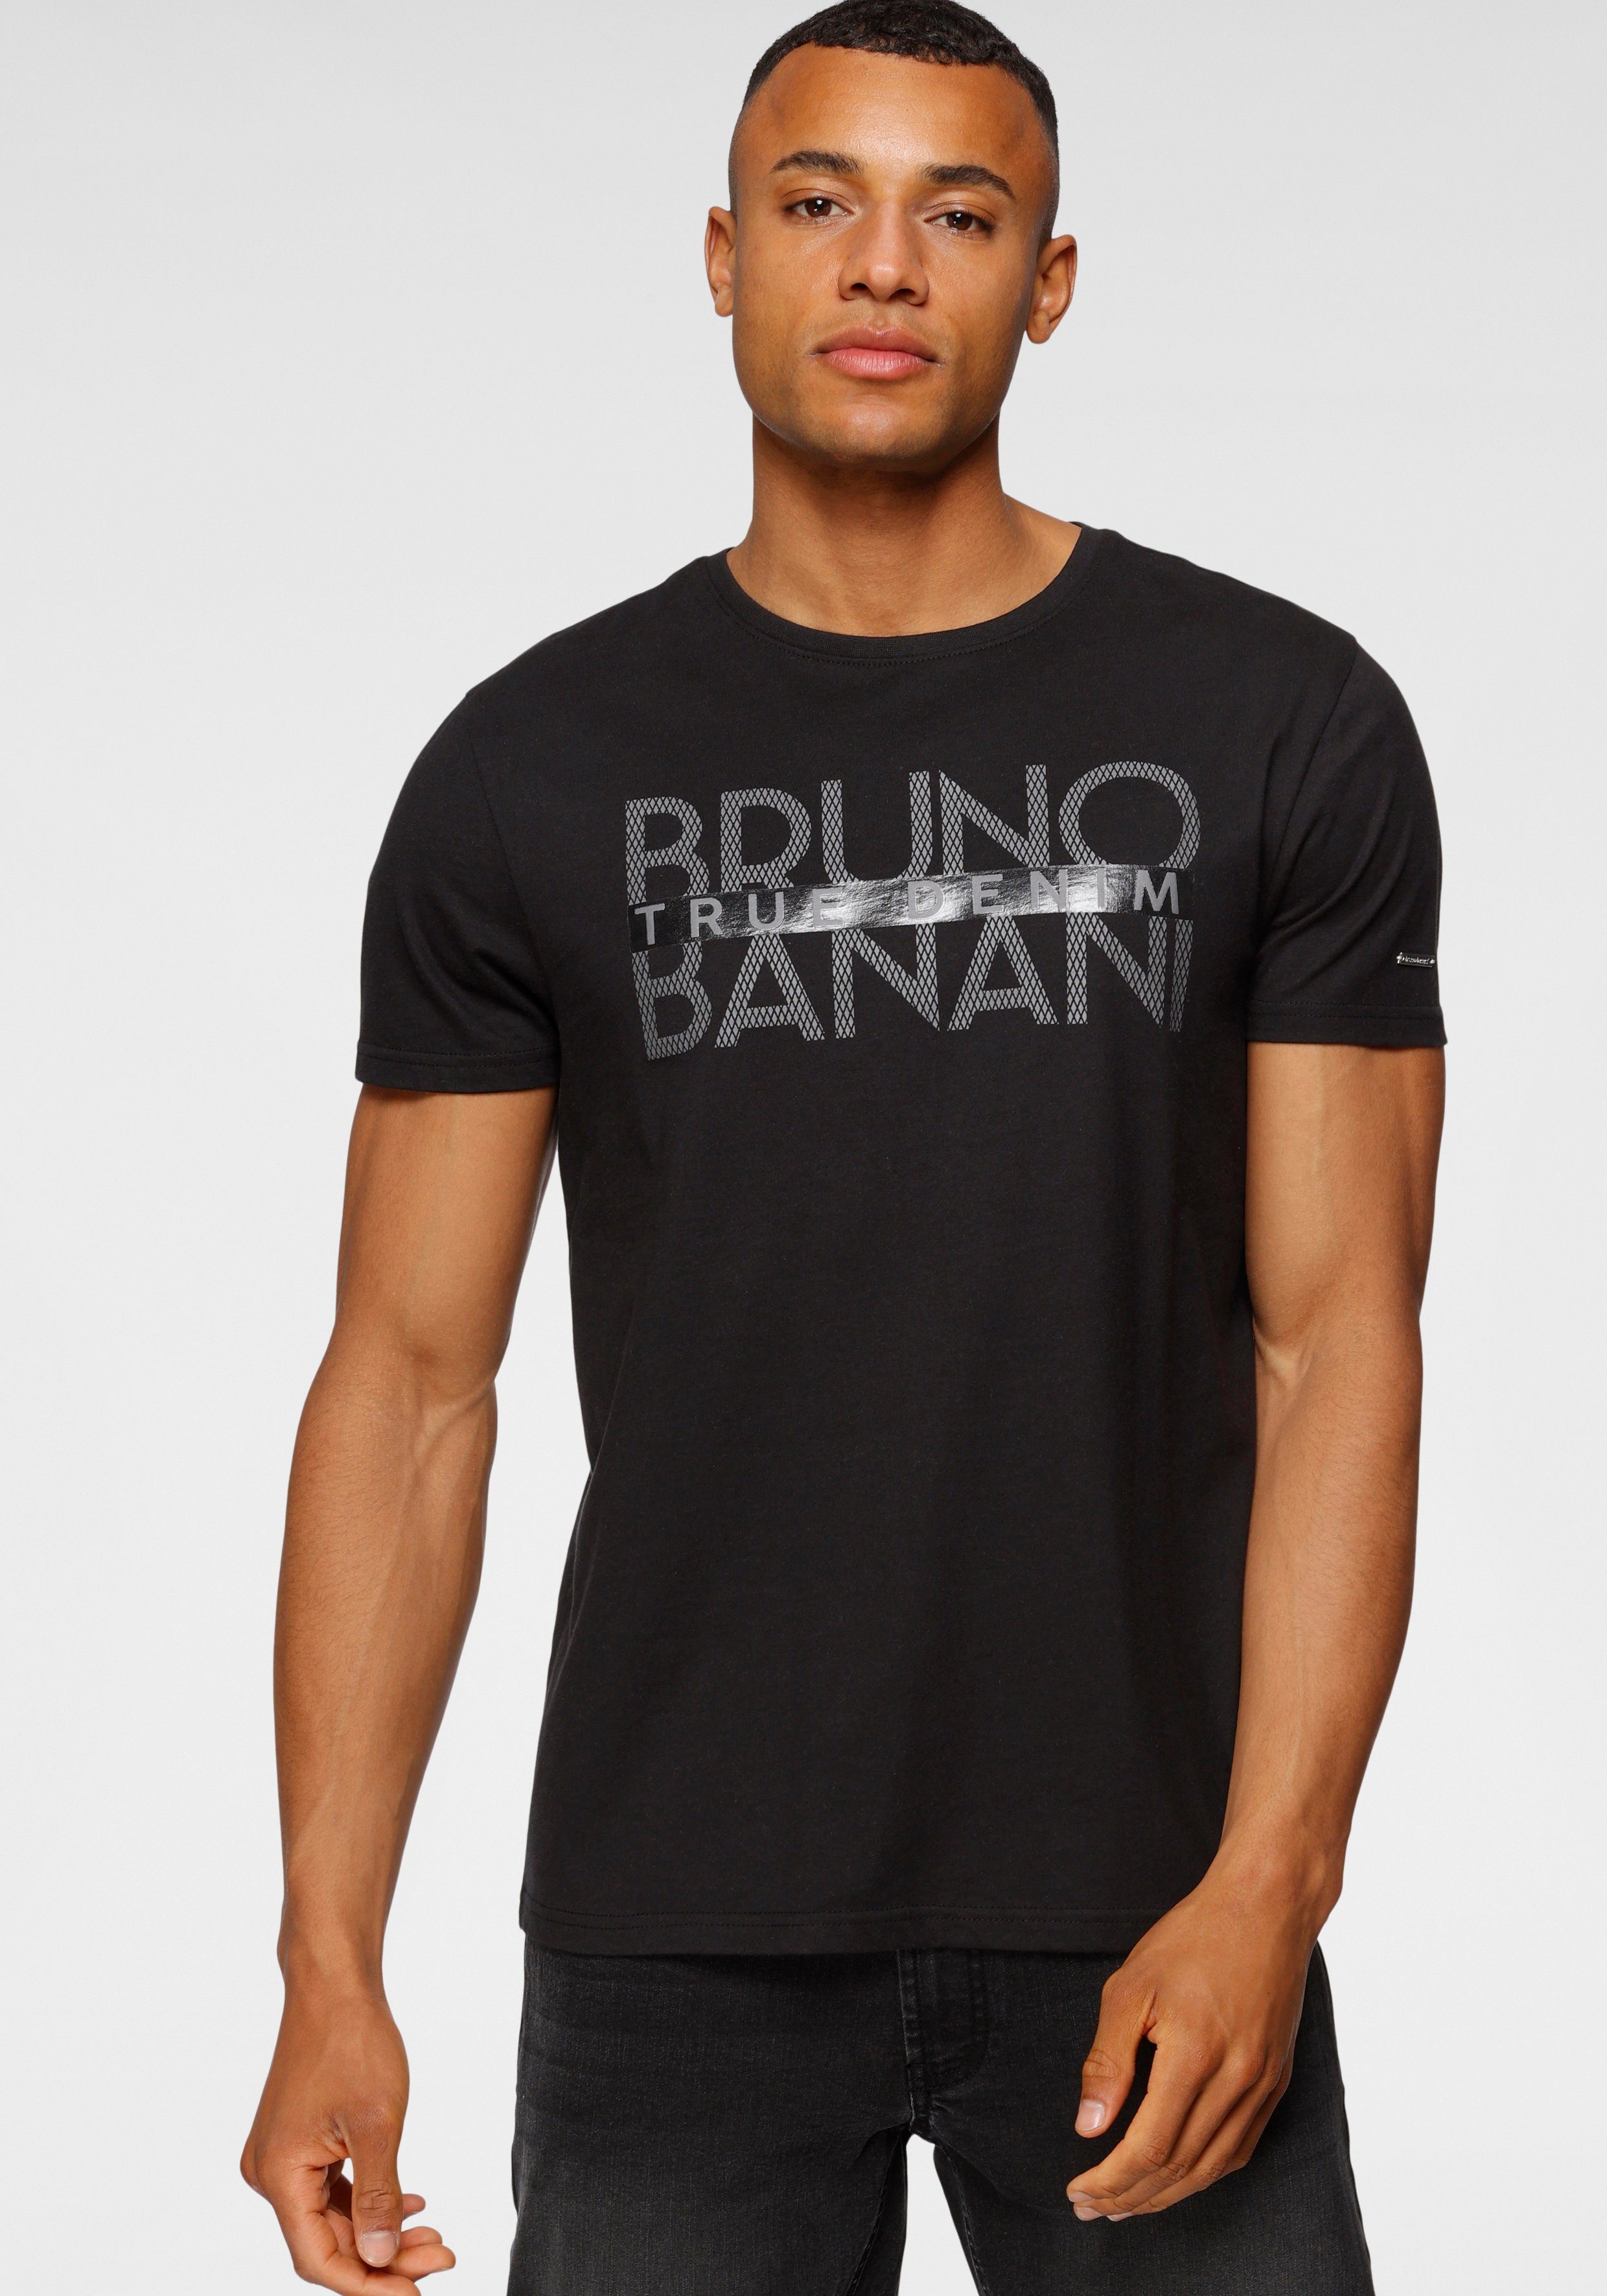 Bruno Print mit Banani glänzendem schwarz T-Shirt